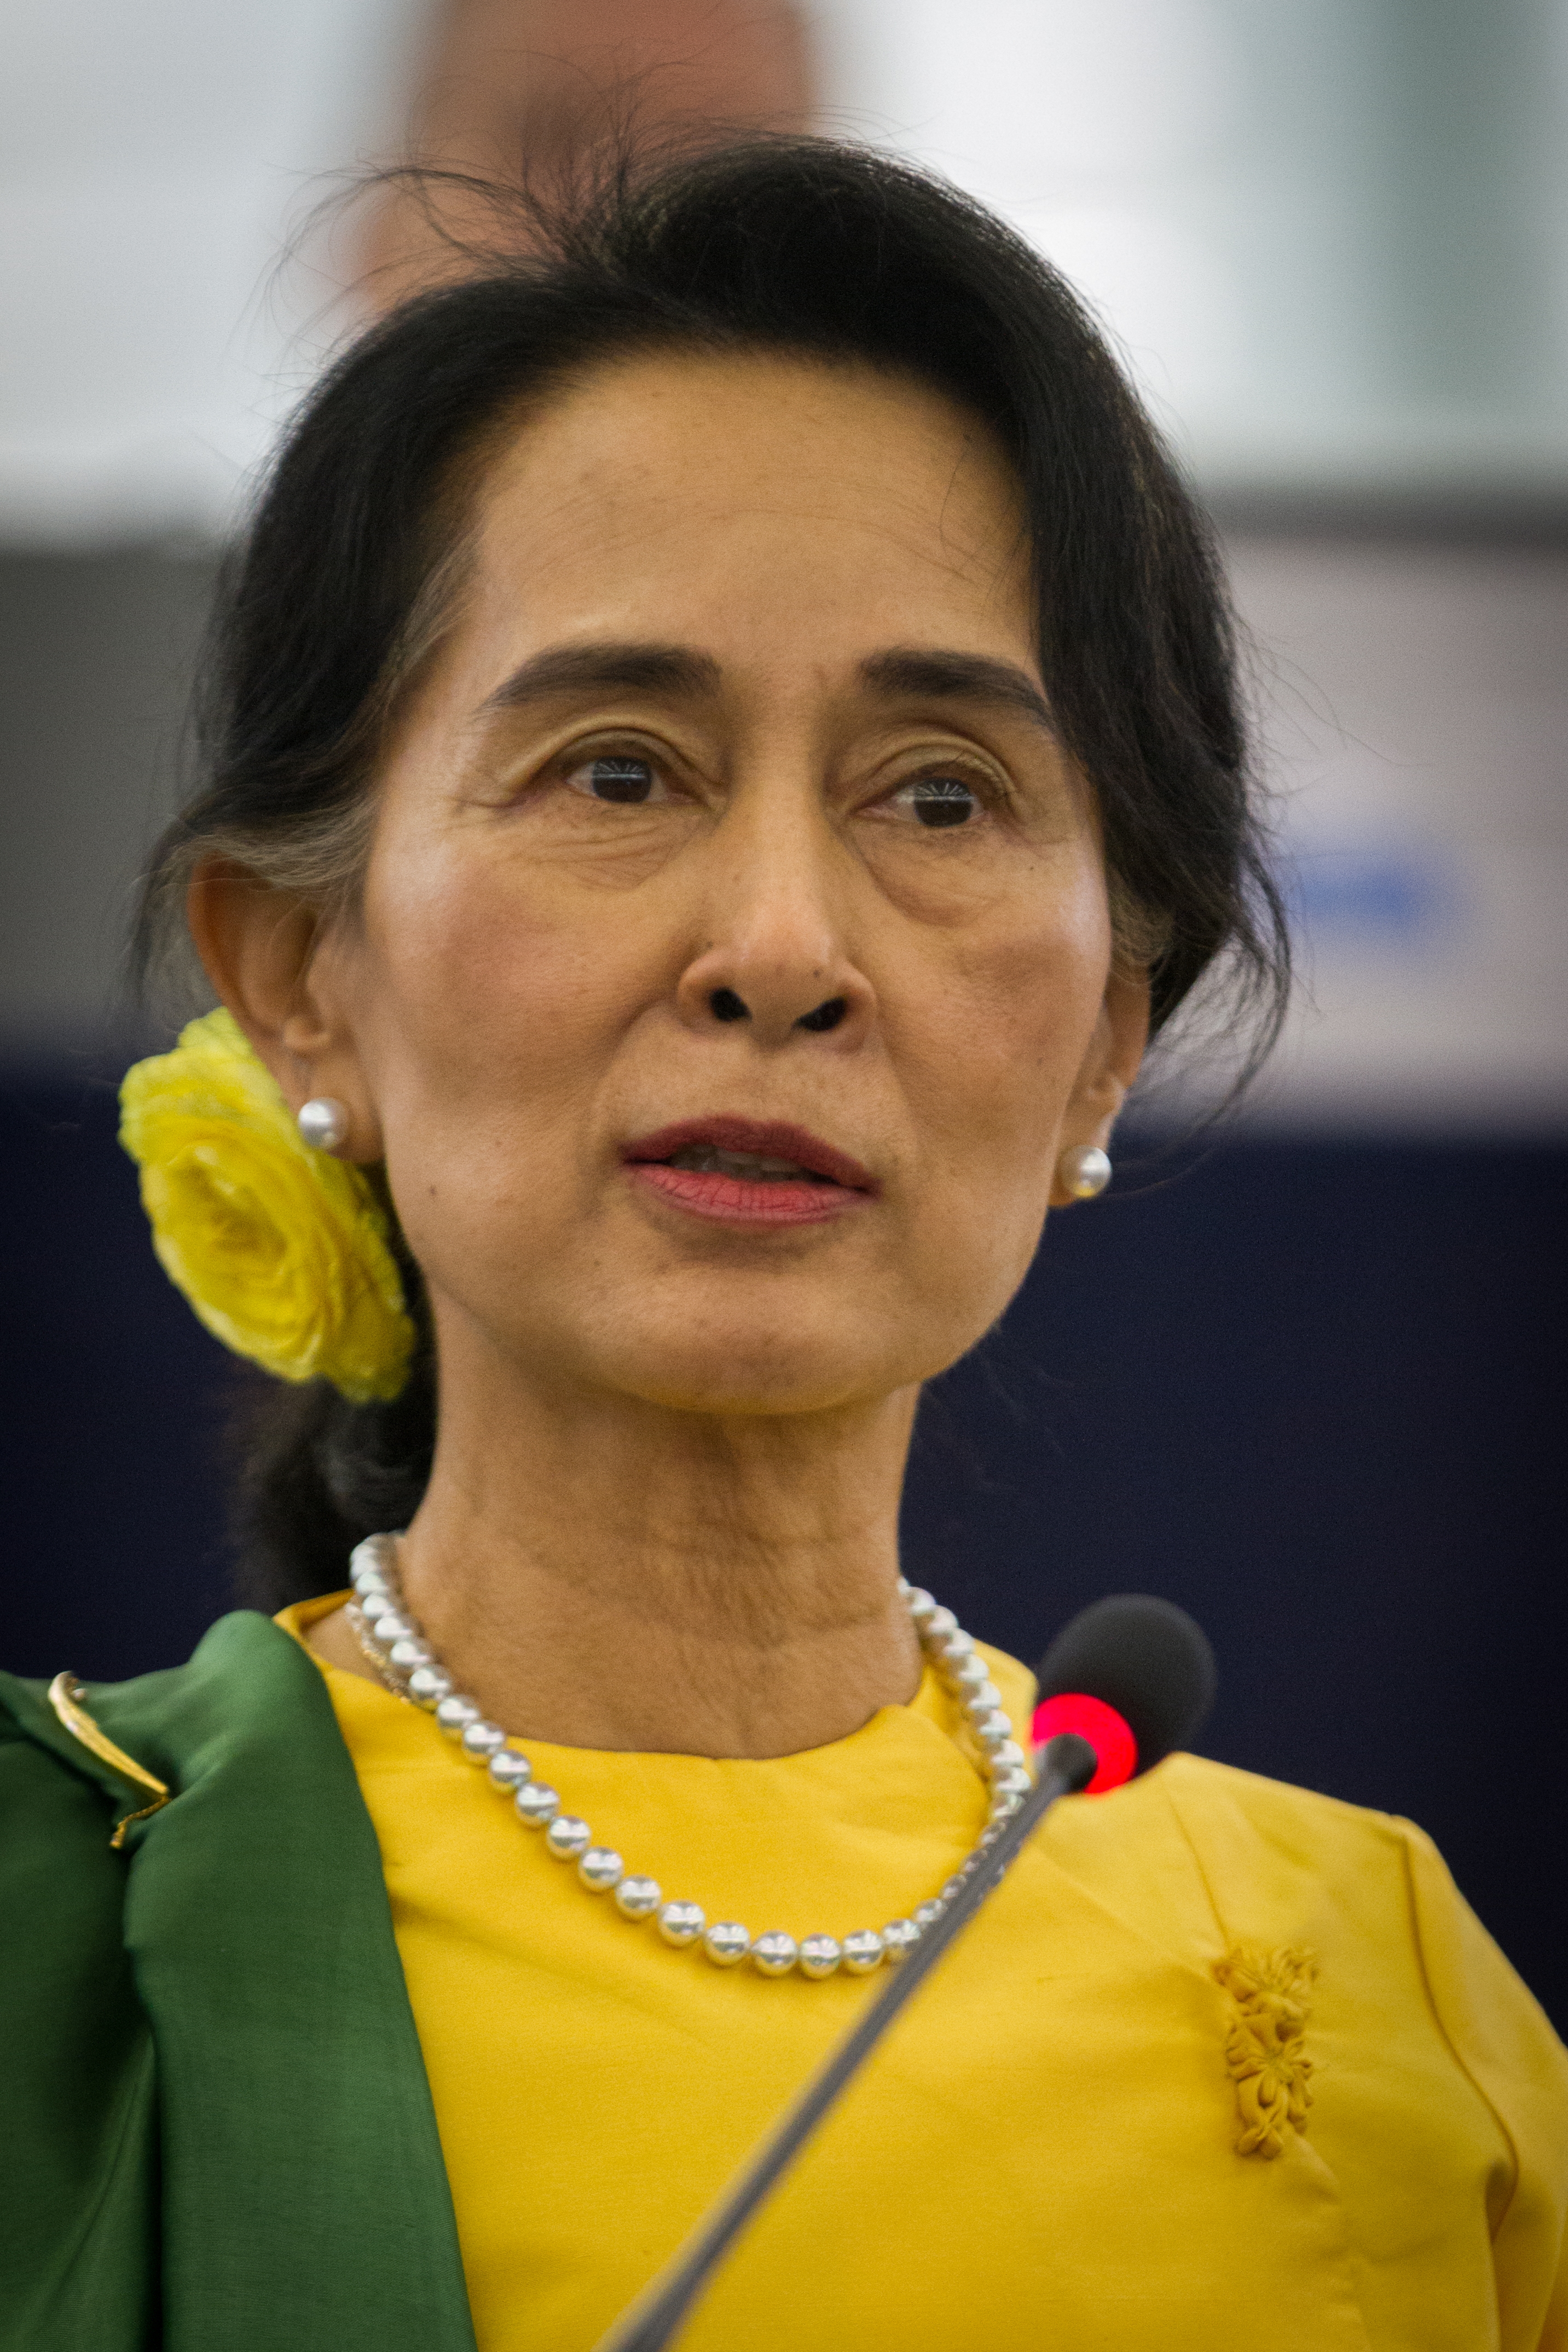 auteur Aung San Suu Kyi de la citation Toute gentillesse que j'ai reçue, petite ou grande, m'a convaincu qu'il ne pourrait jamais y en avoir assez dans notre monde ... la gentillesse peut changer la vie des gens.